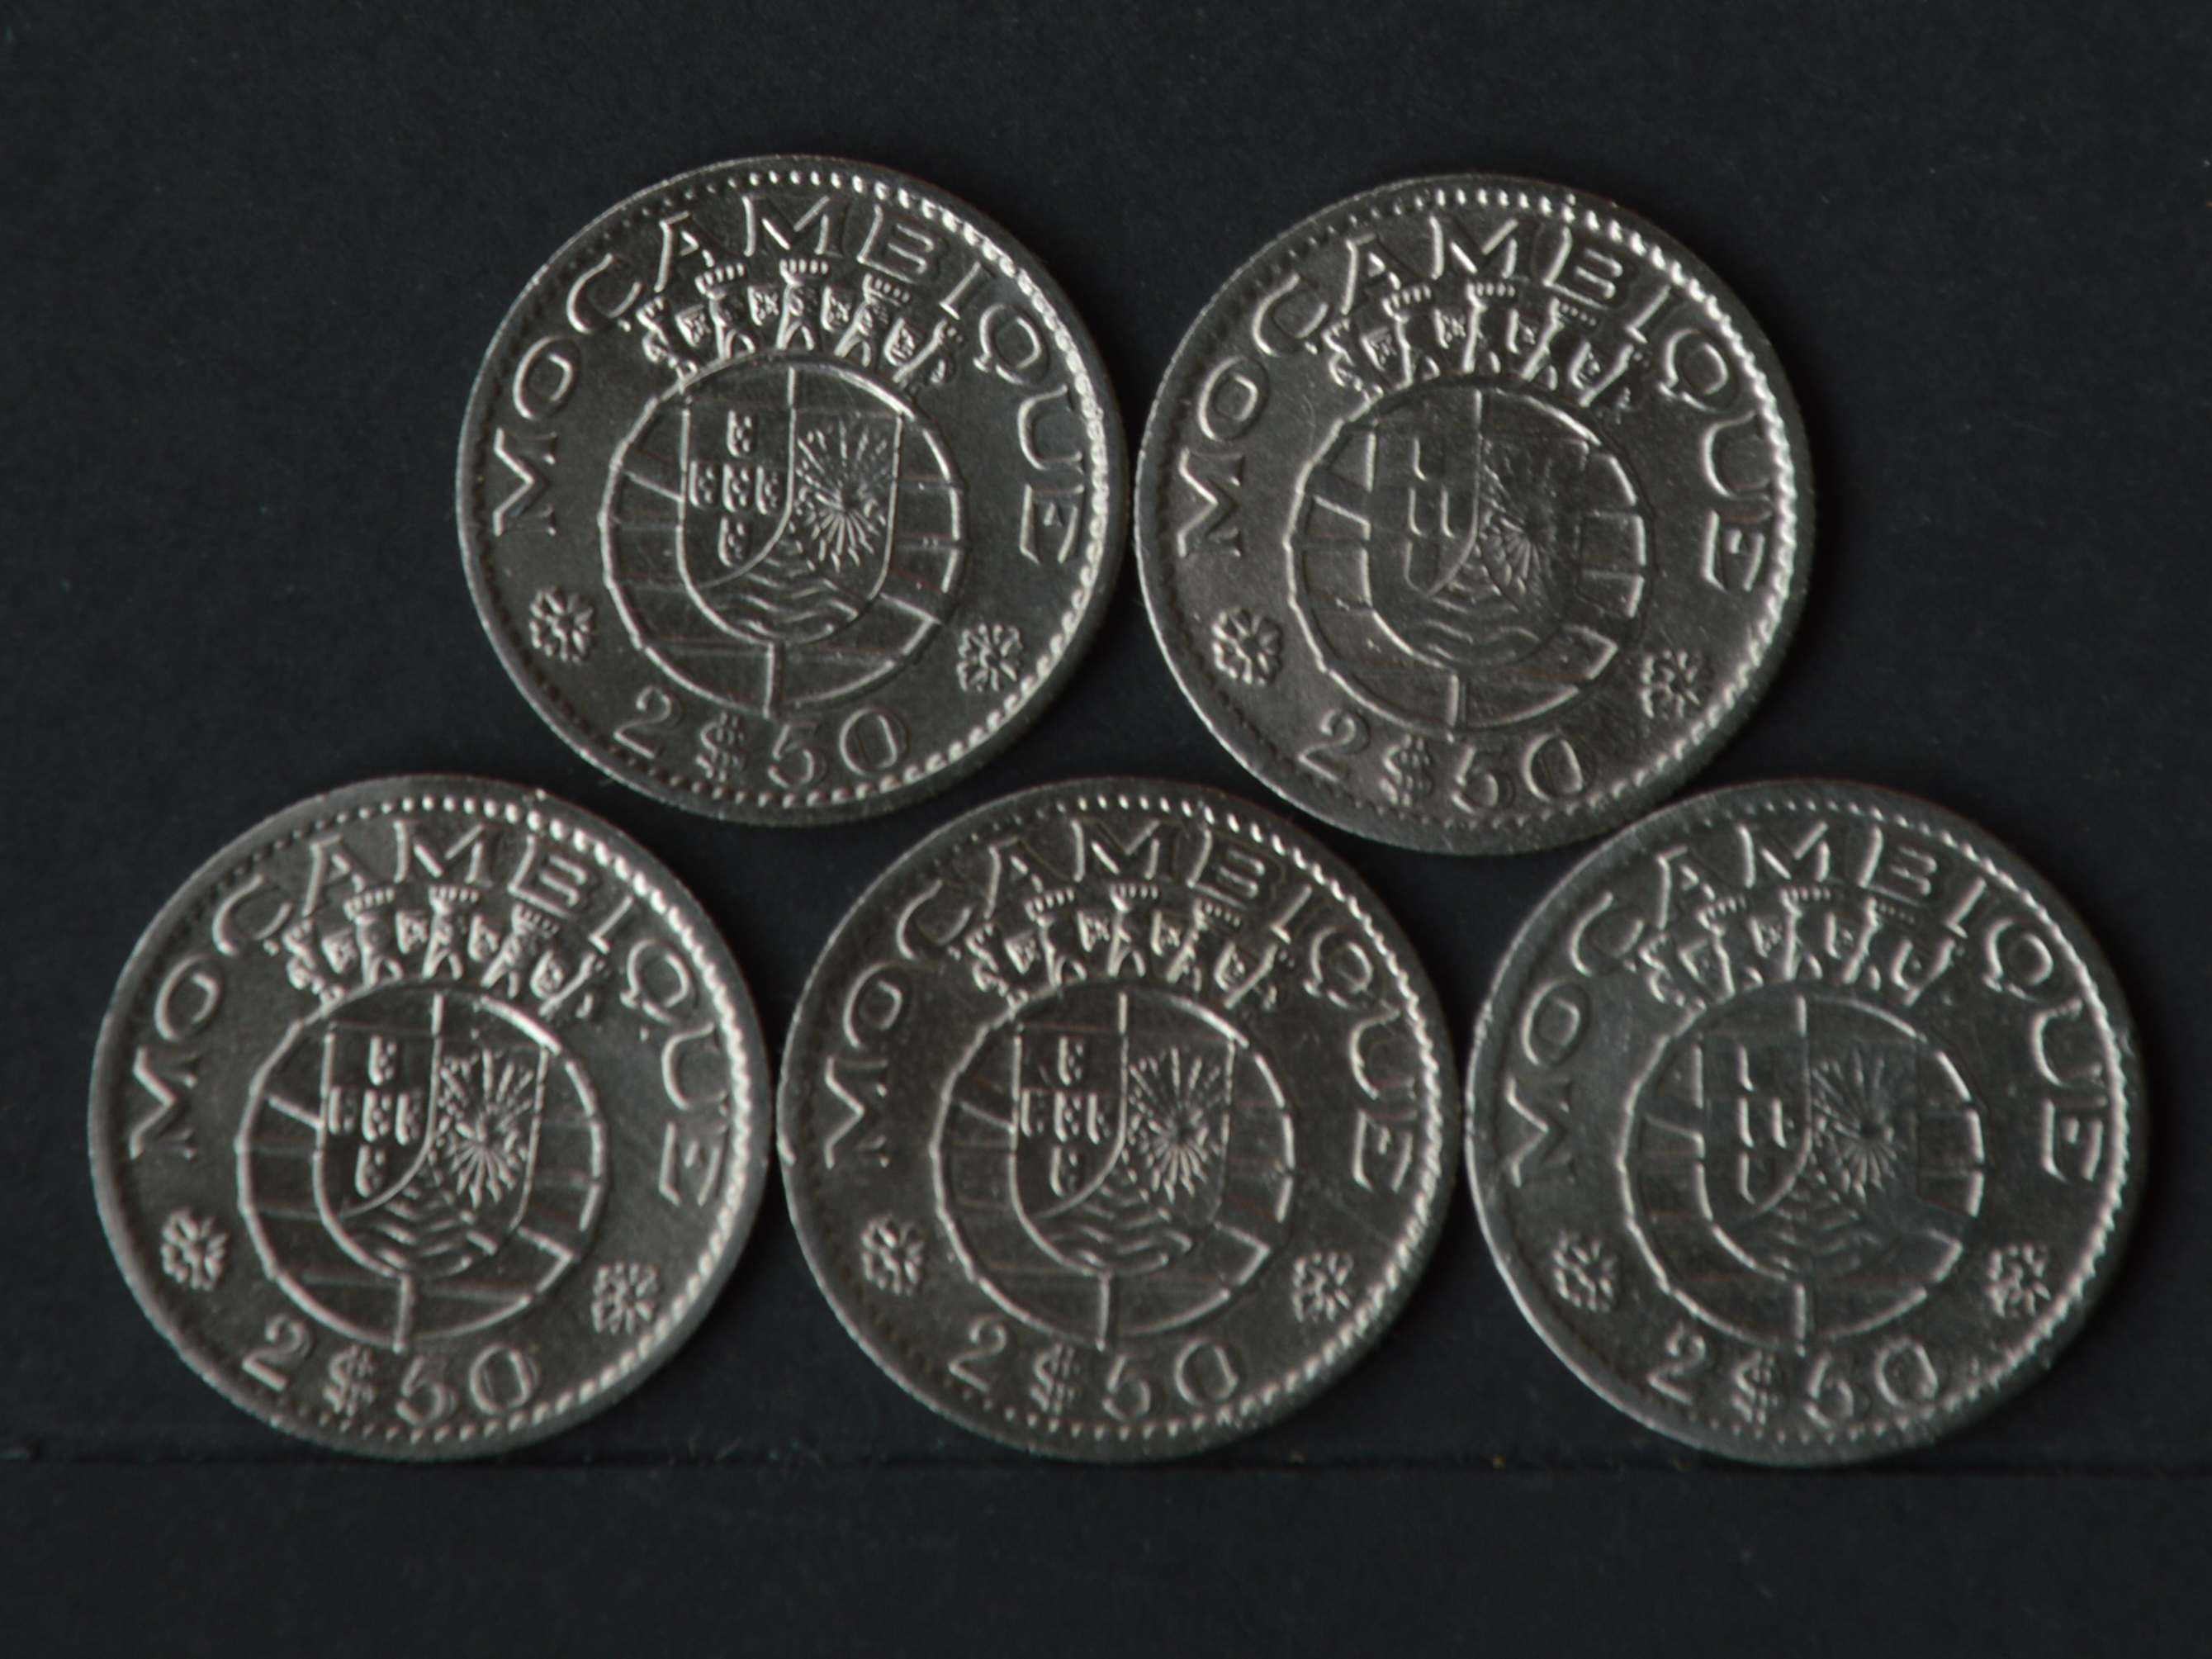 Moçambique Lote com 5 moedas - olx X00008